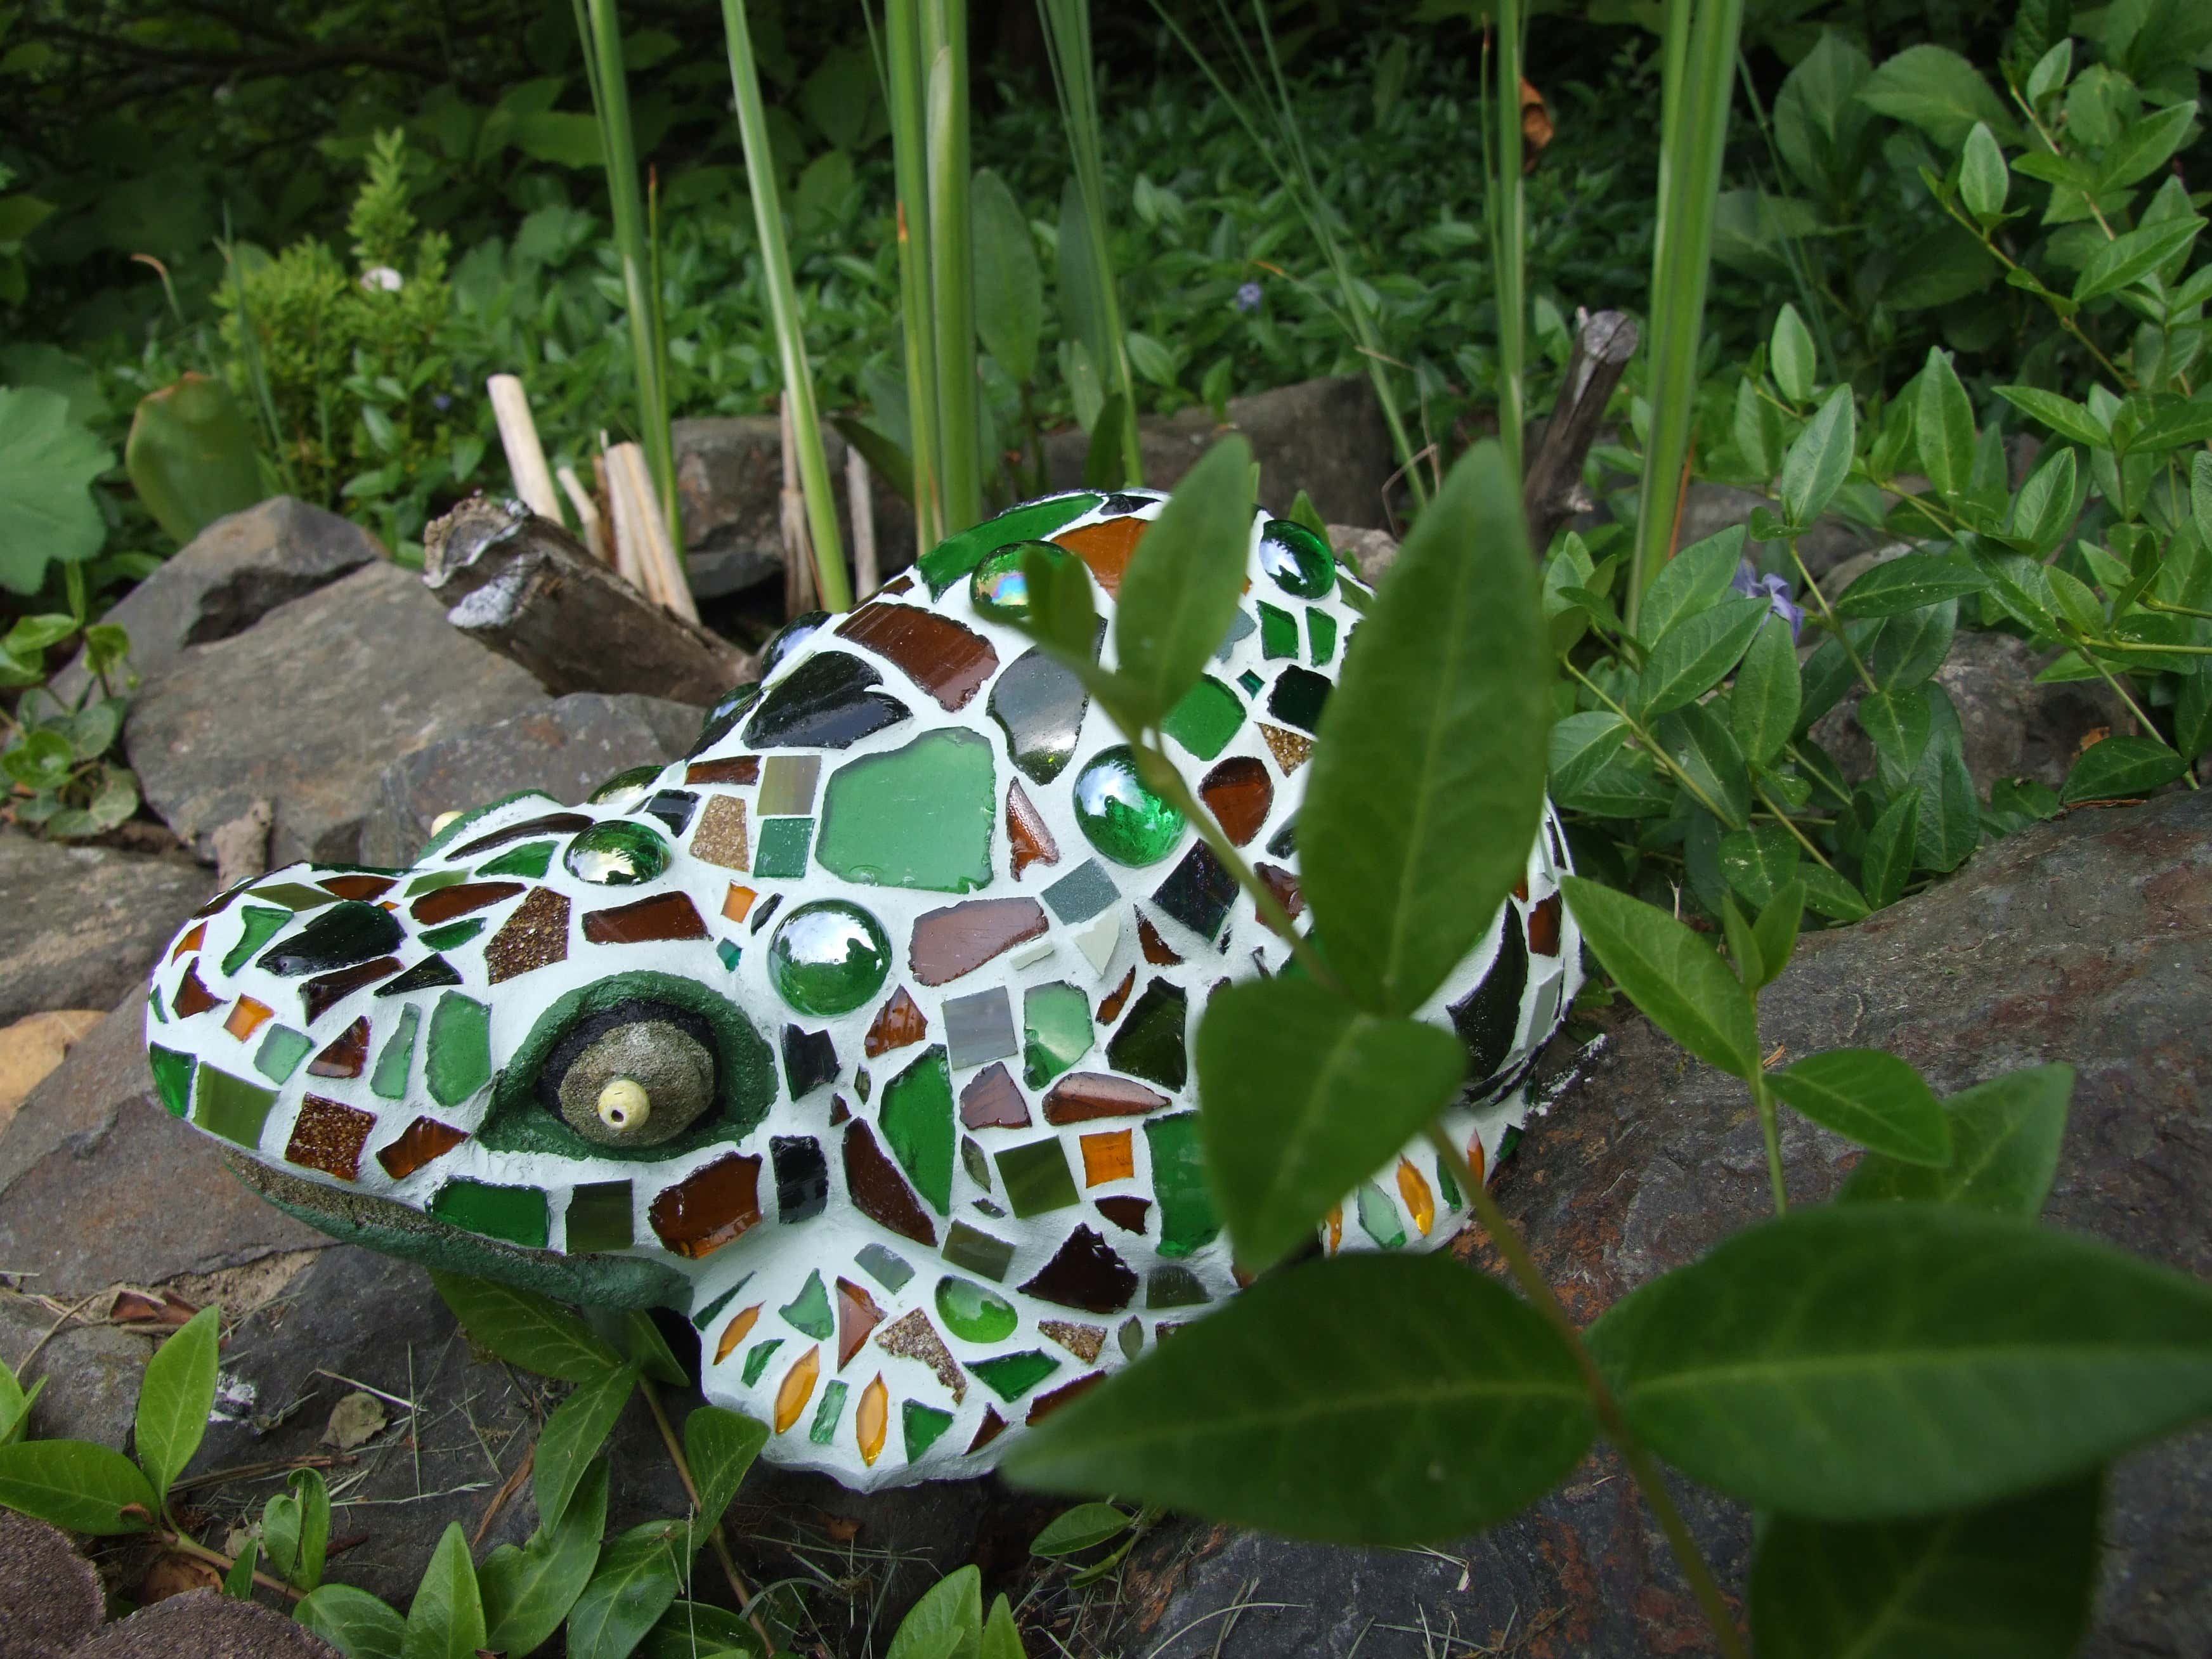 Der perfekte Platz für den Mosaik-Frosch? Natürlich nah am Miniteich, wo auch die echten Frösche sitzen.